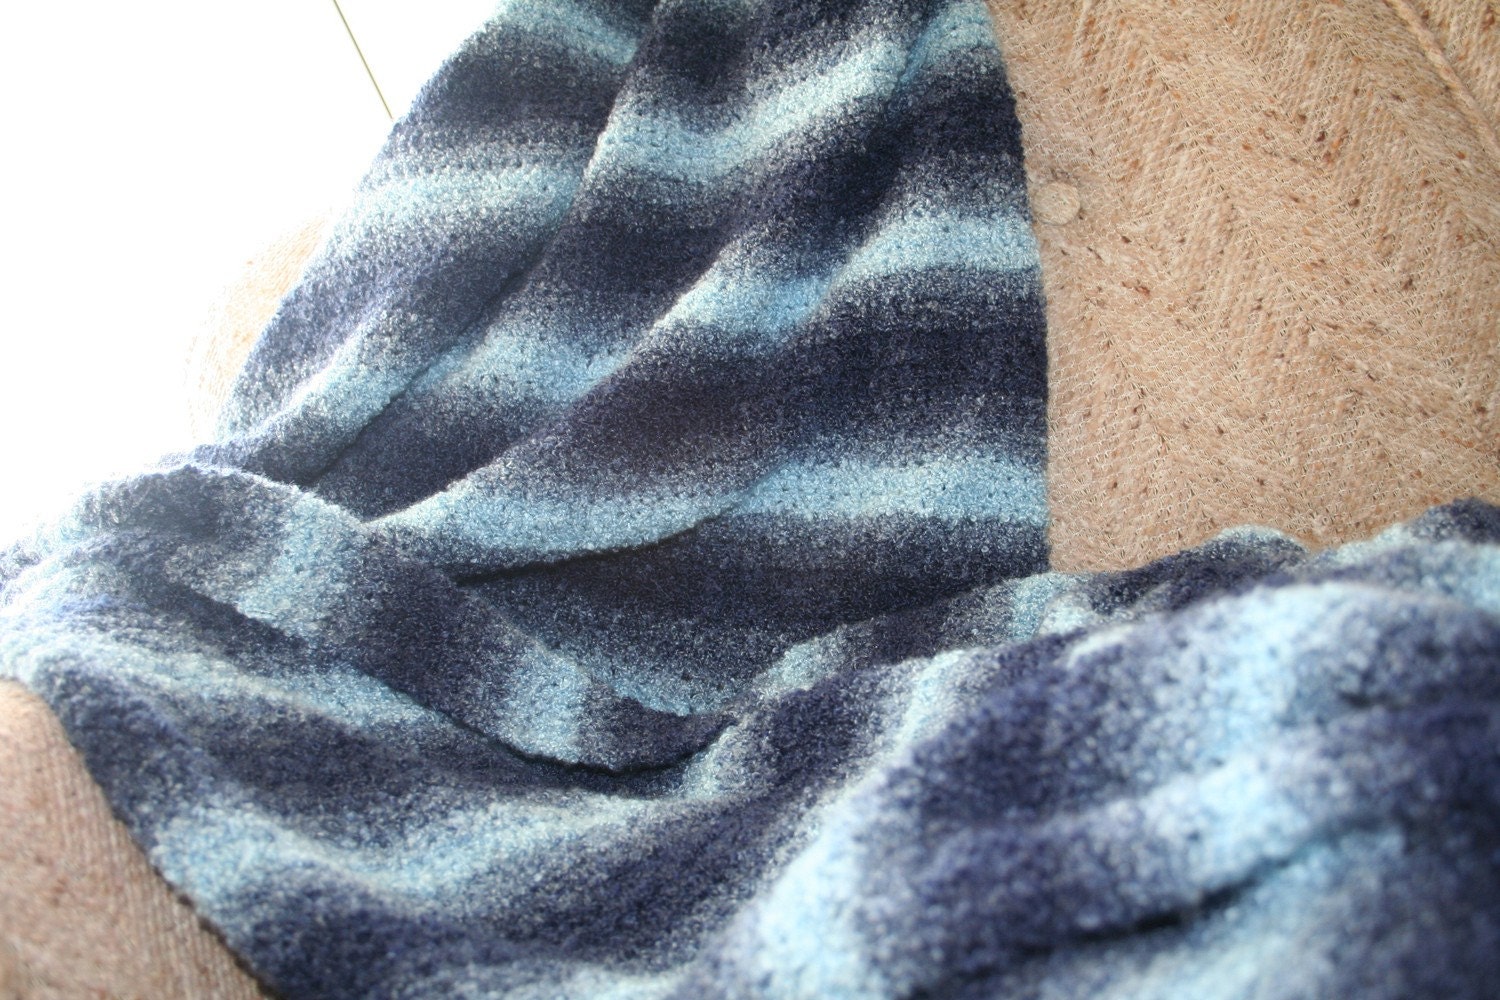 Fuzzy Throw Blanket